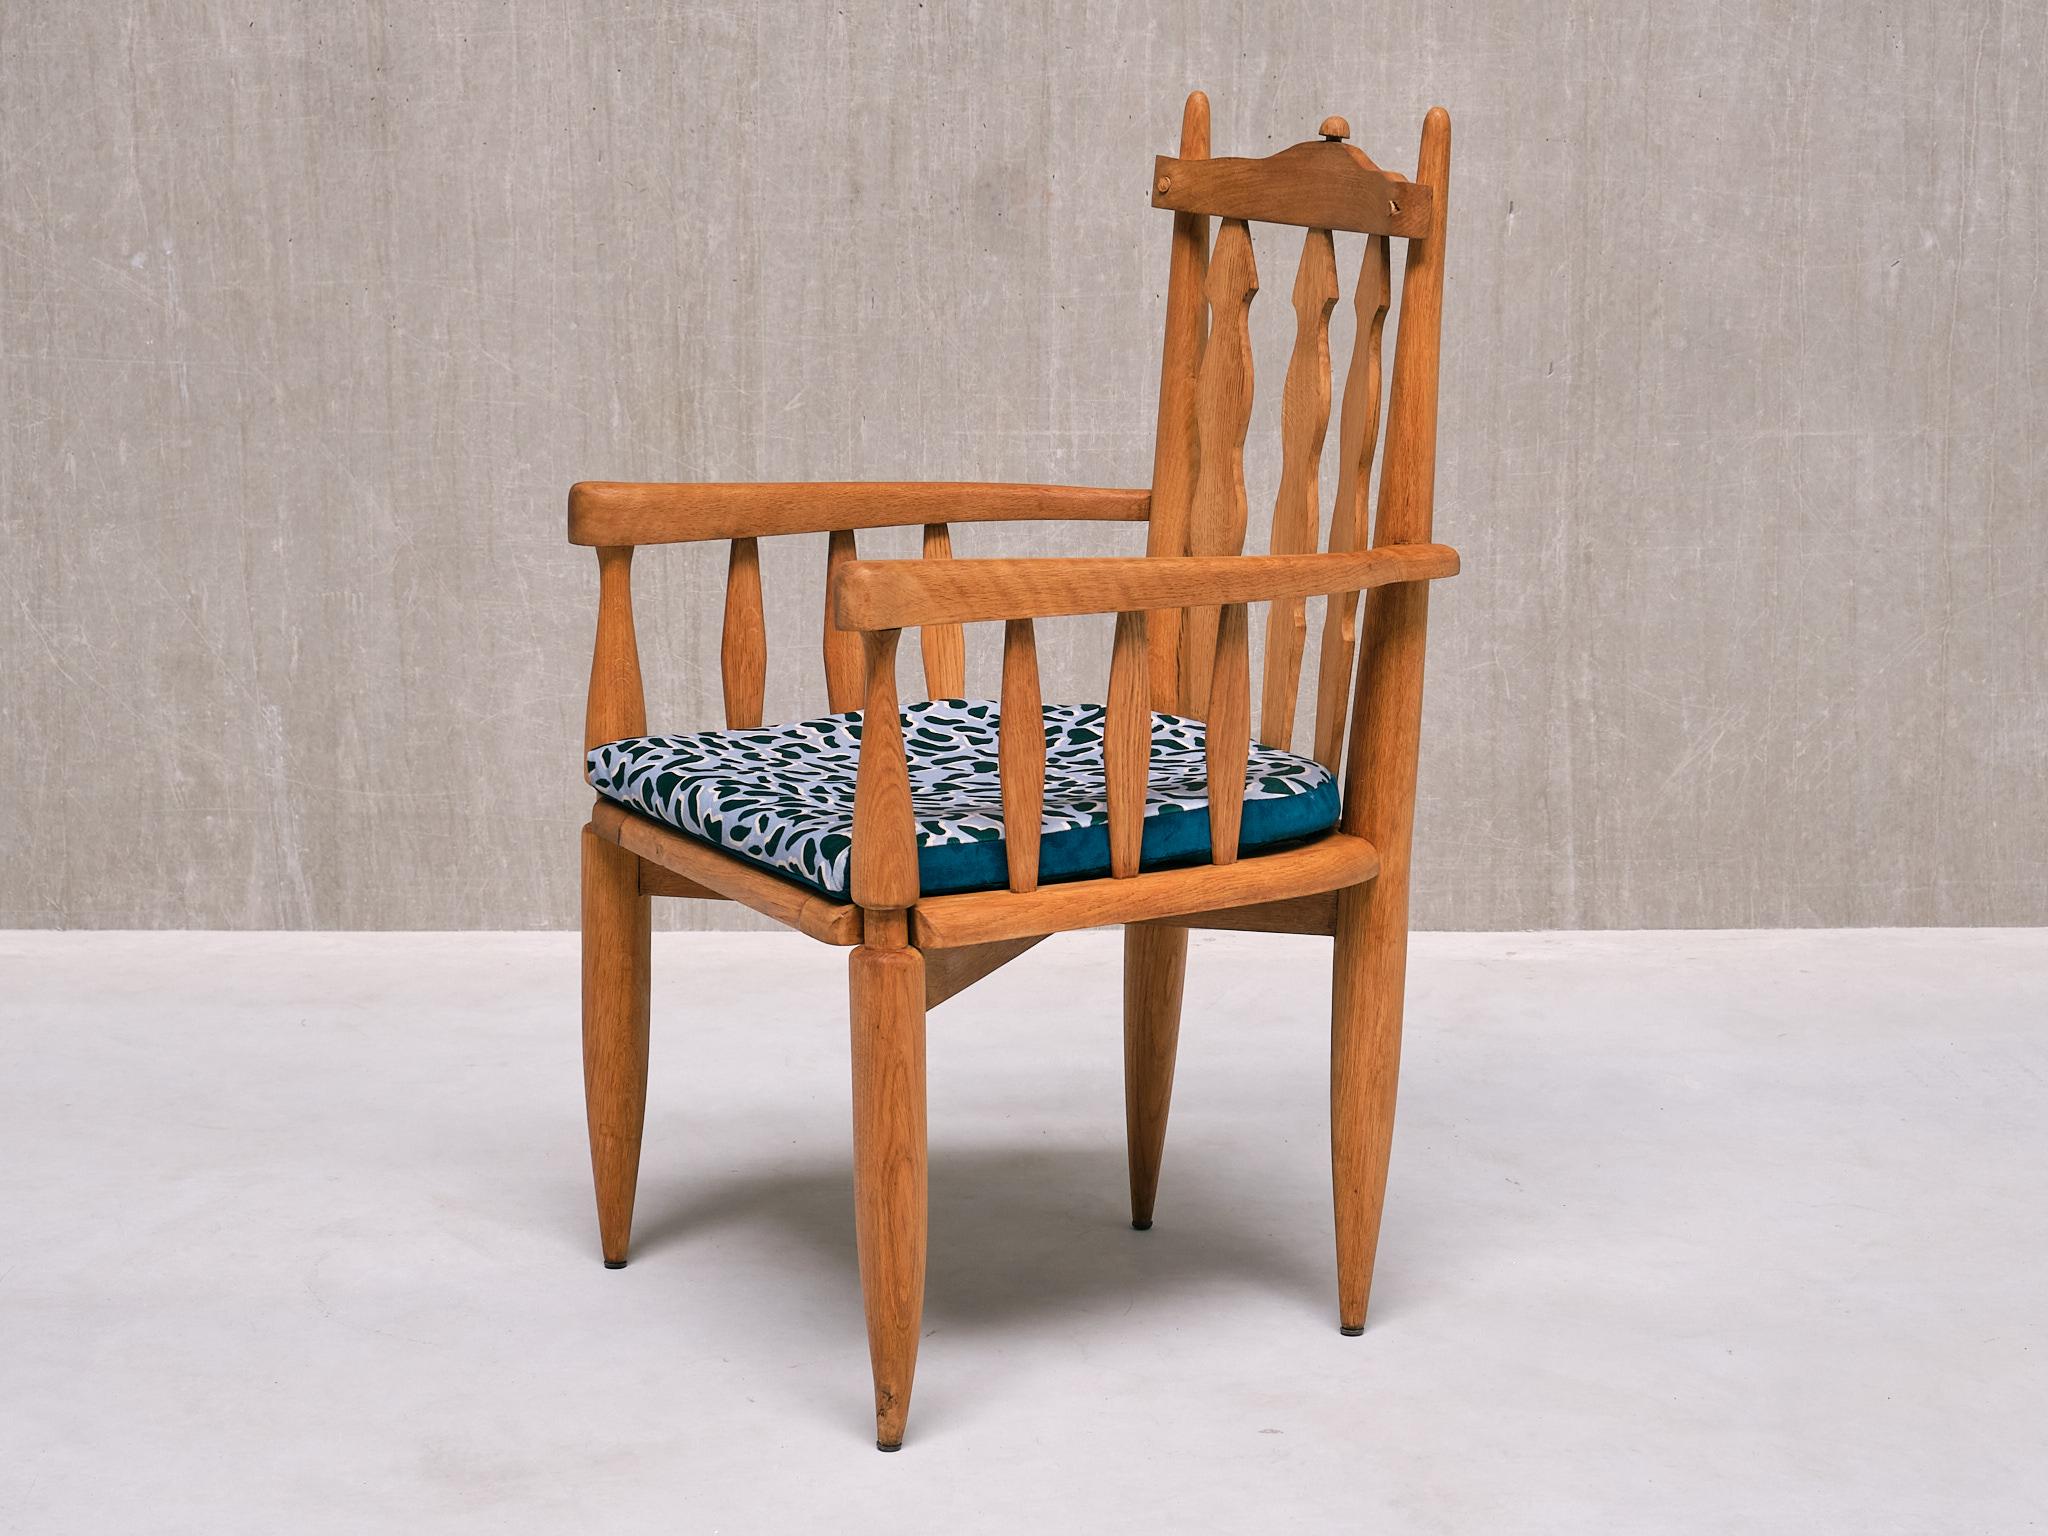 Dieser skulpturale Sessel wurde in den 1950er Jahren von Jacques Chambron und Robert Guillerme entworfen. Es wurde von ihrem Unternehmen Votre Maison in Nordfrankreich hergestellt. Dieser Stuhl ist einer der originellsten und seltensten Entwürfe des